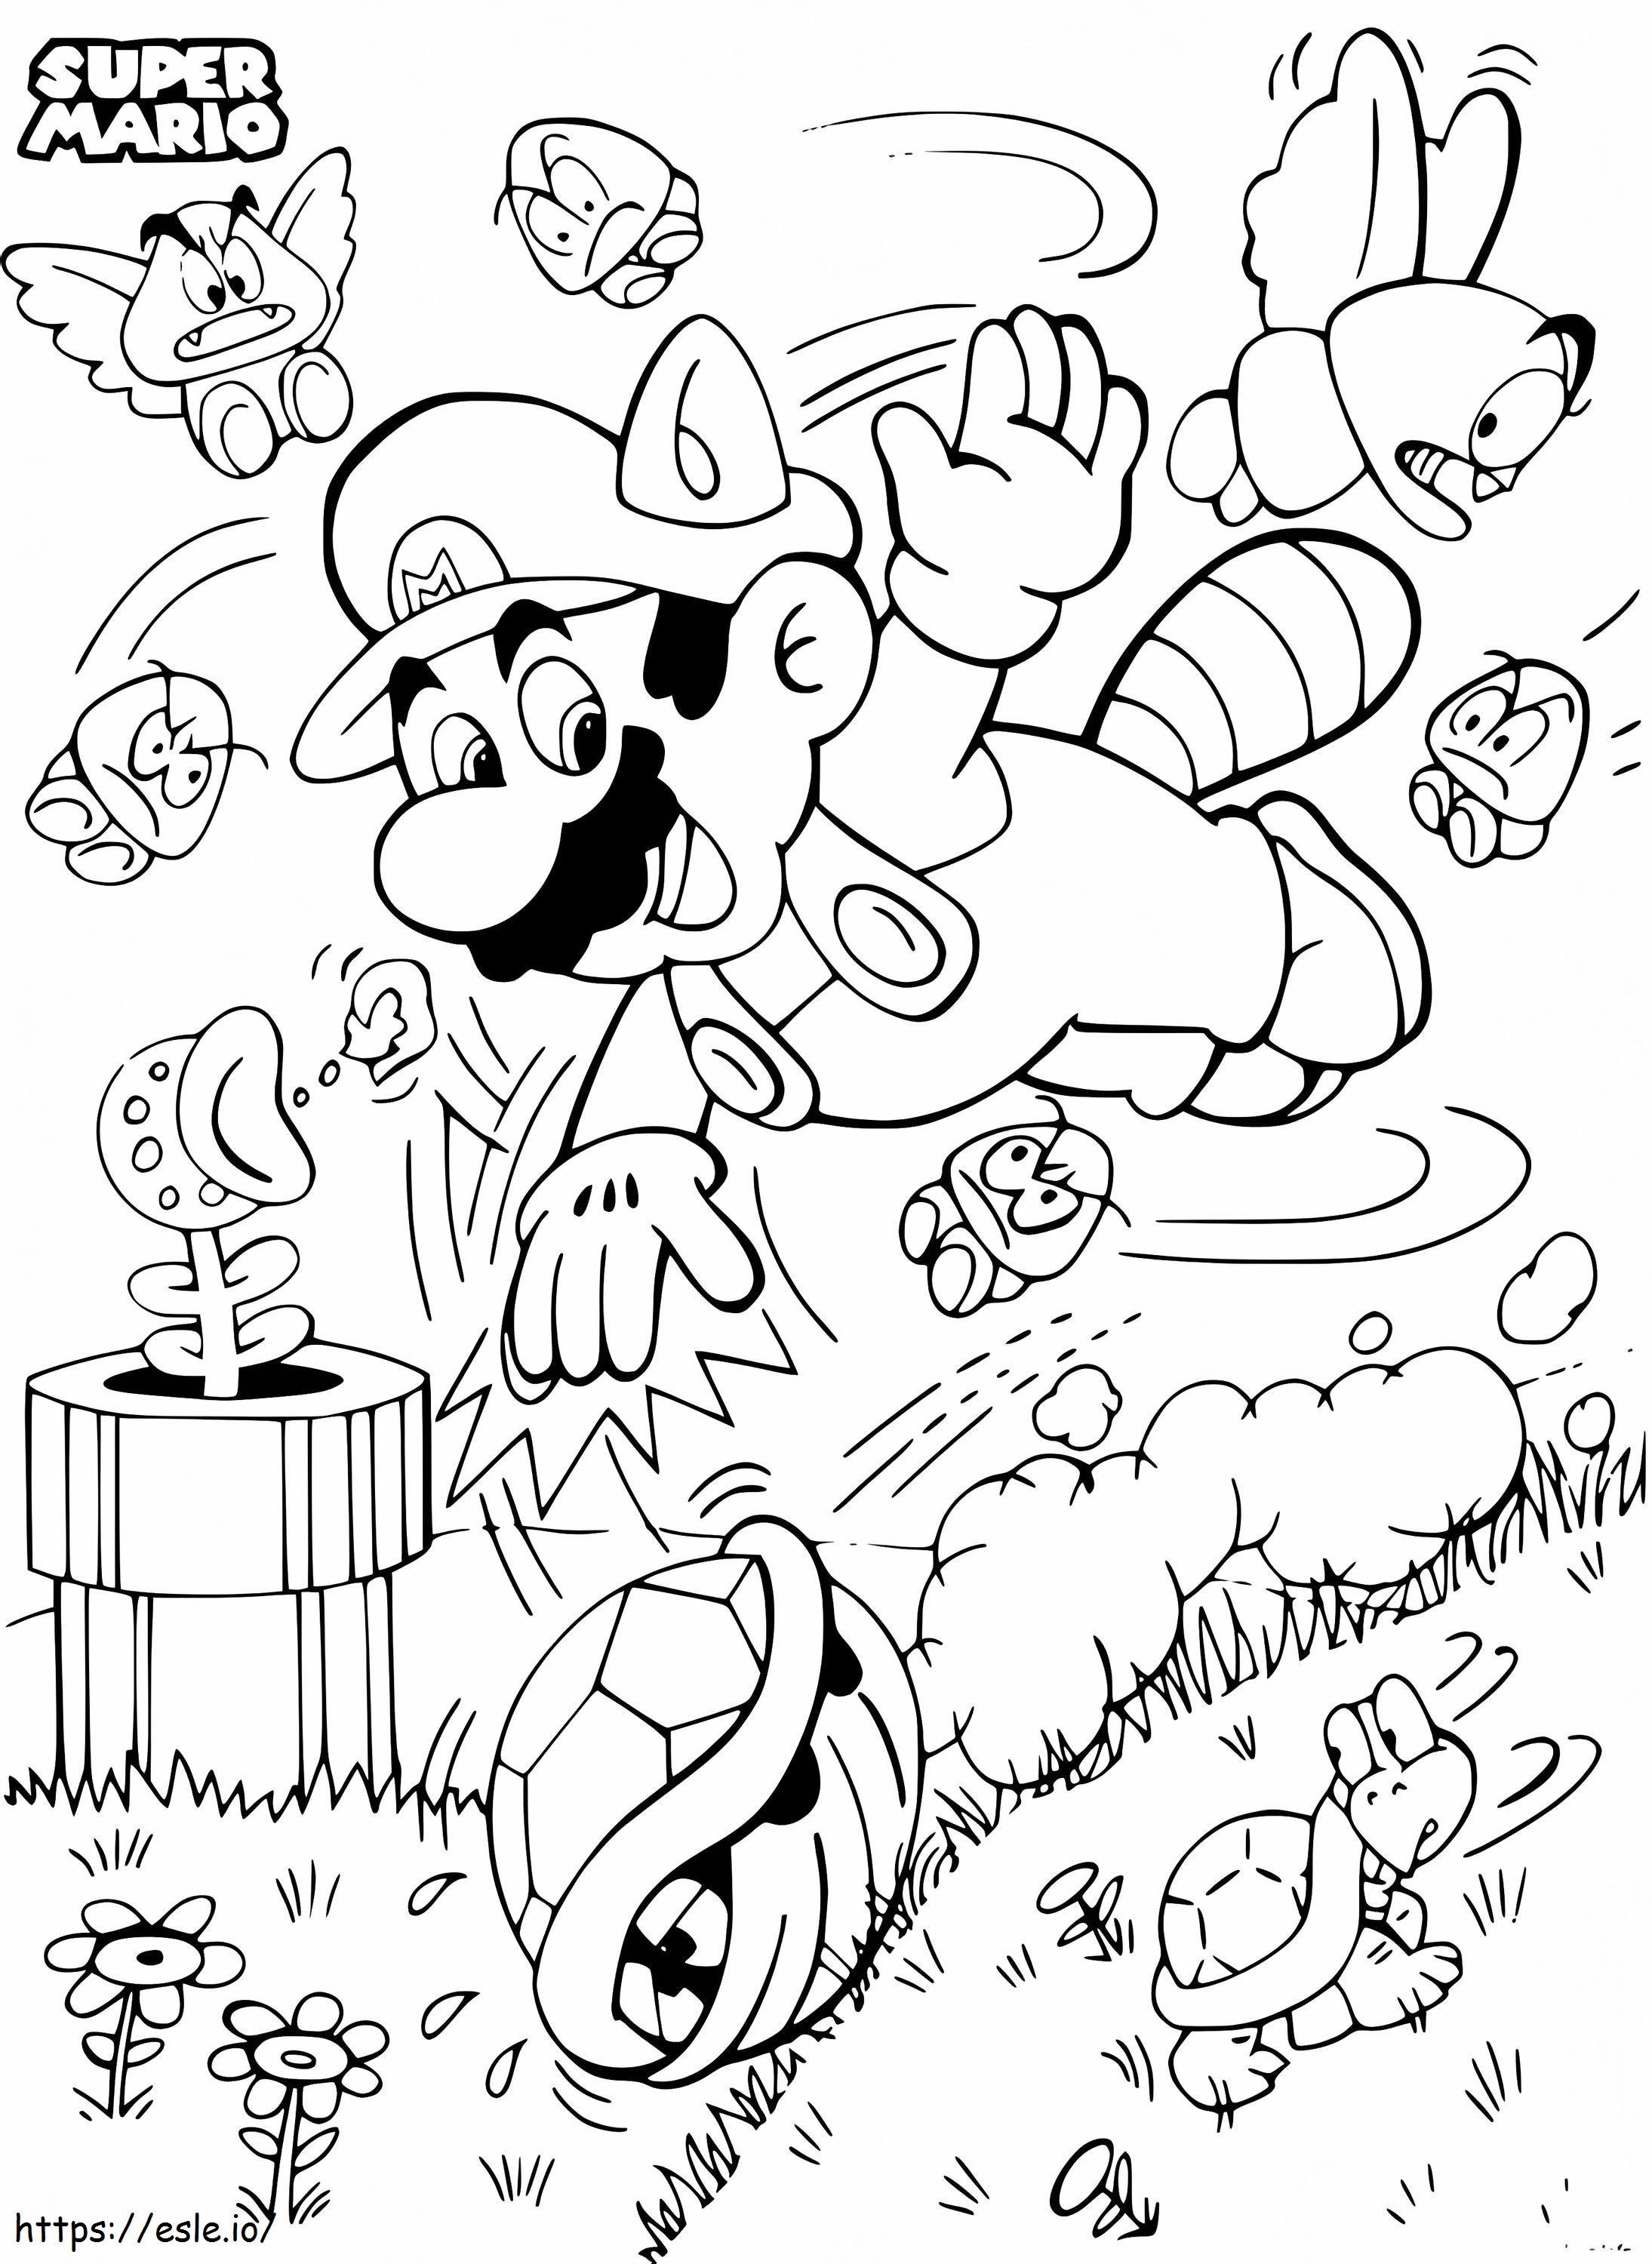 Super Mario Bros coloring page